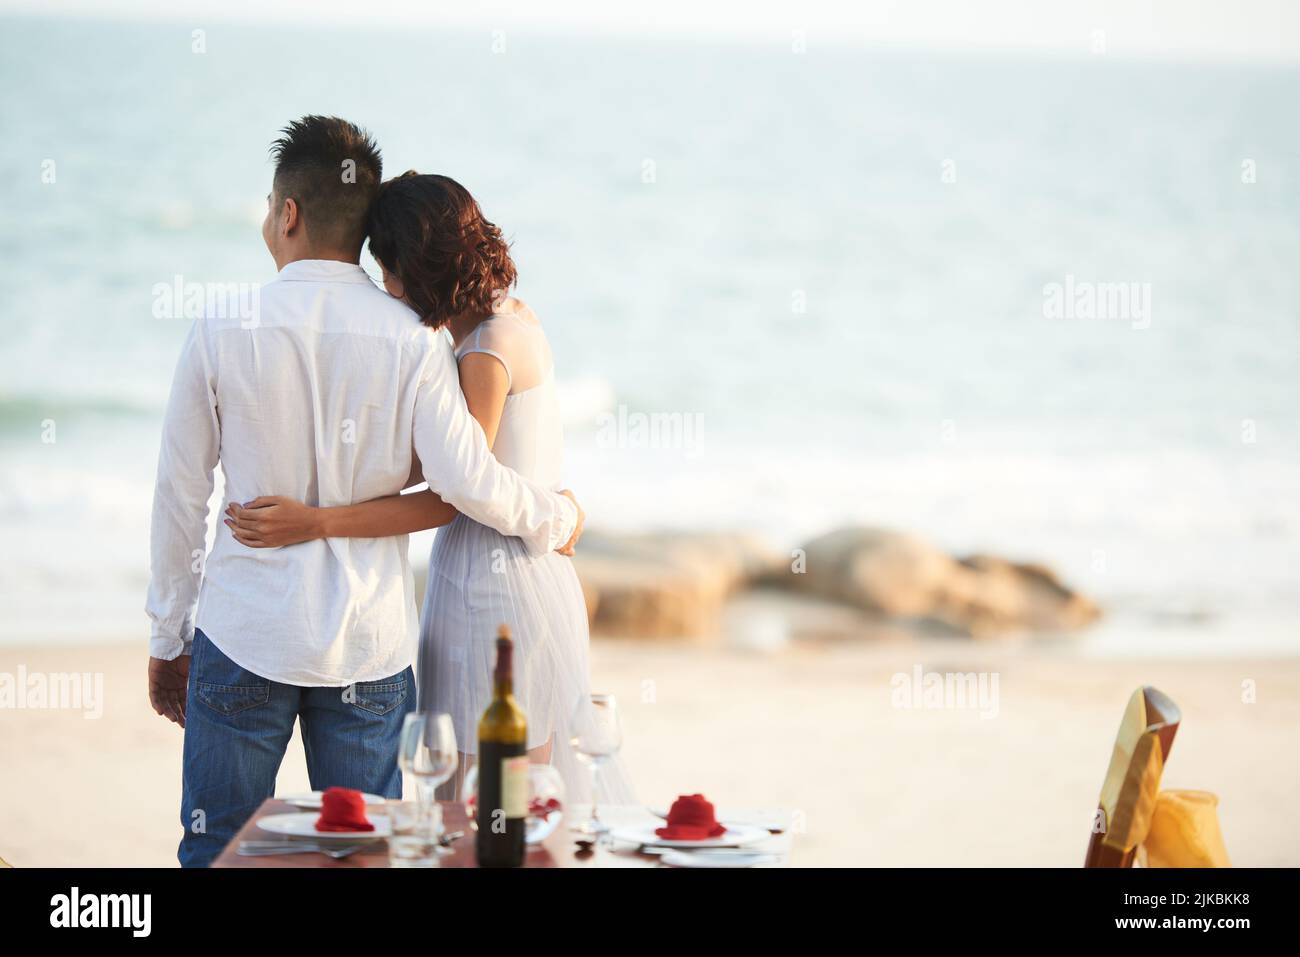 Una pareja joven cenando romántica en la playa Foto de stock